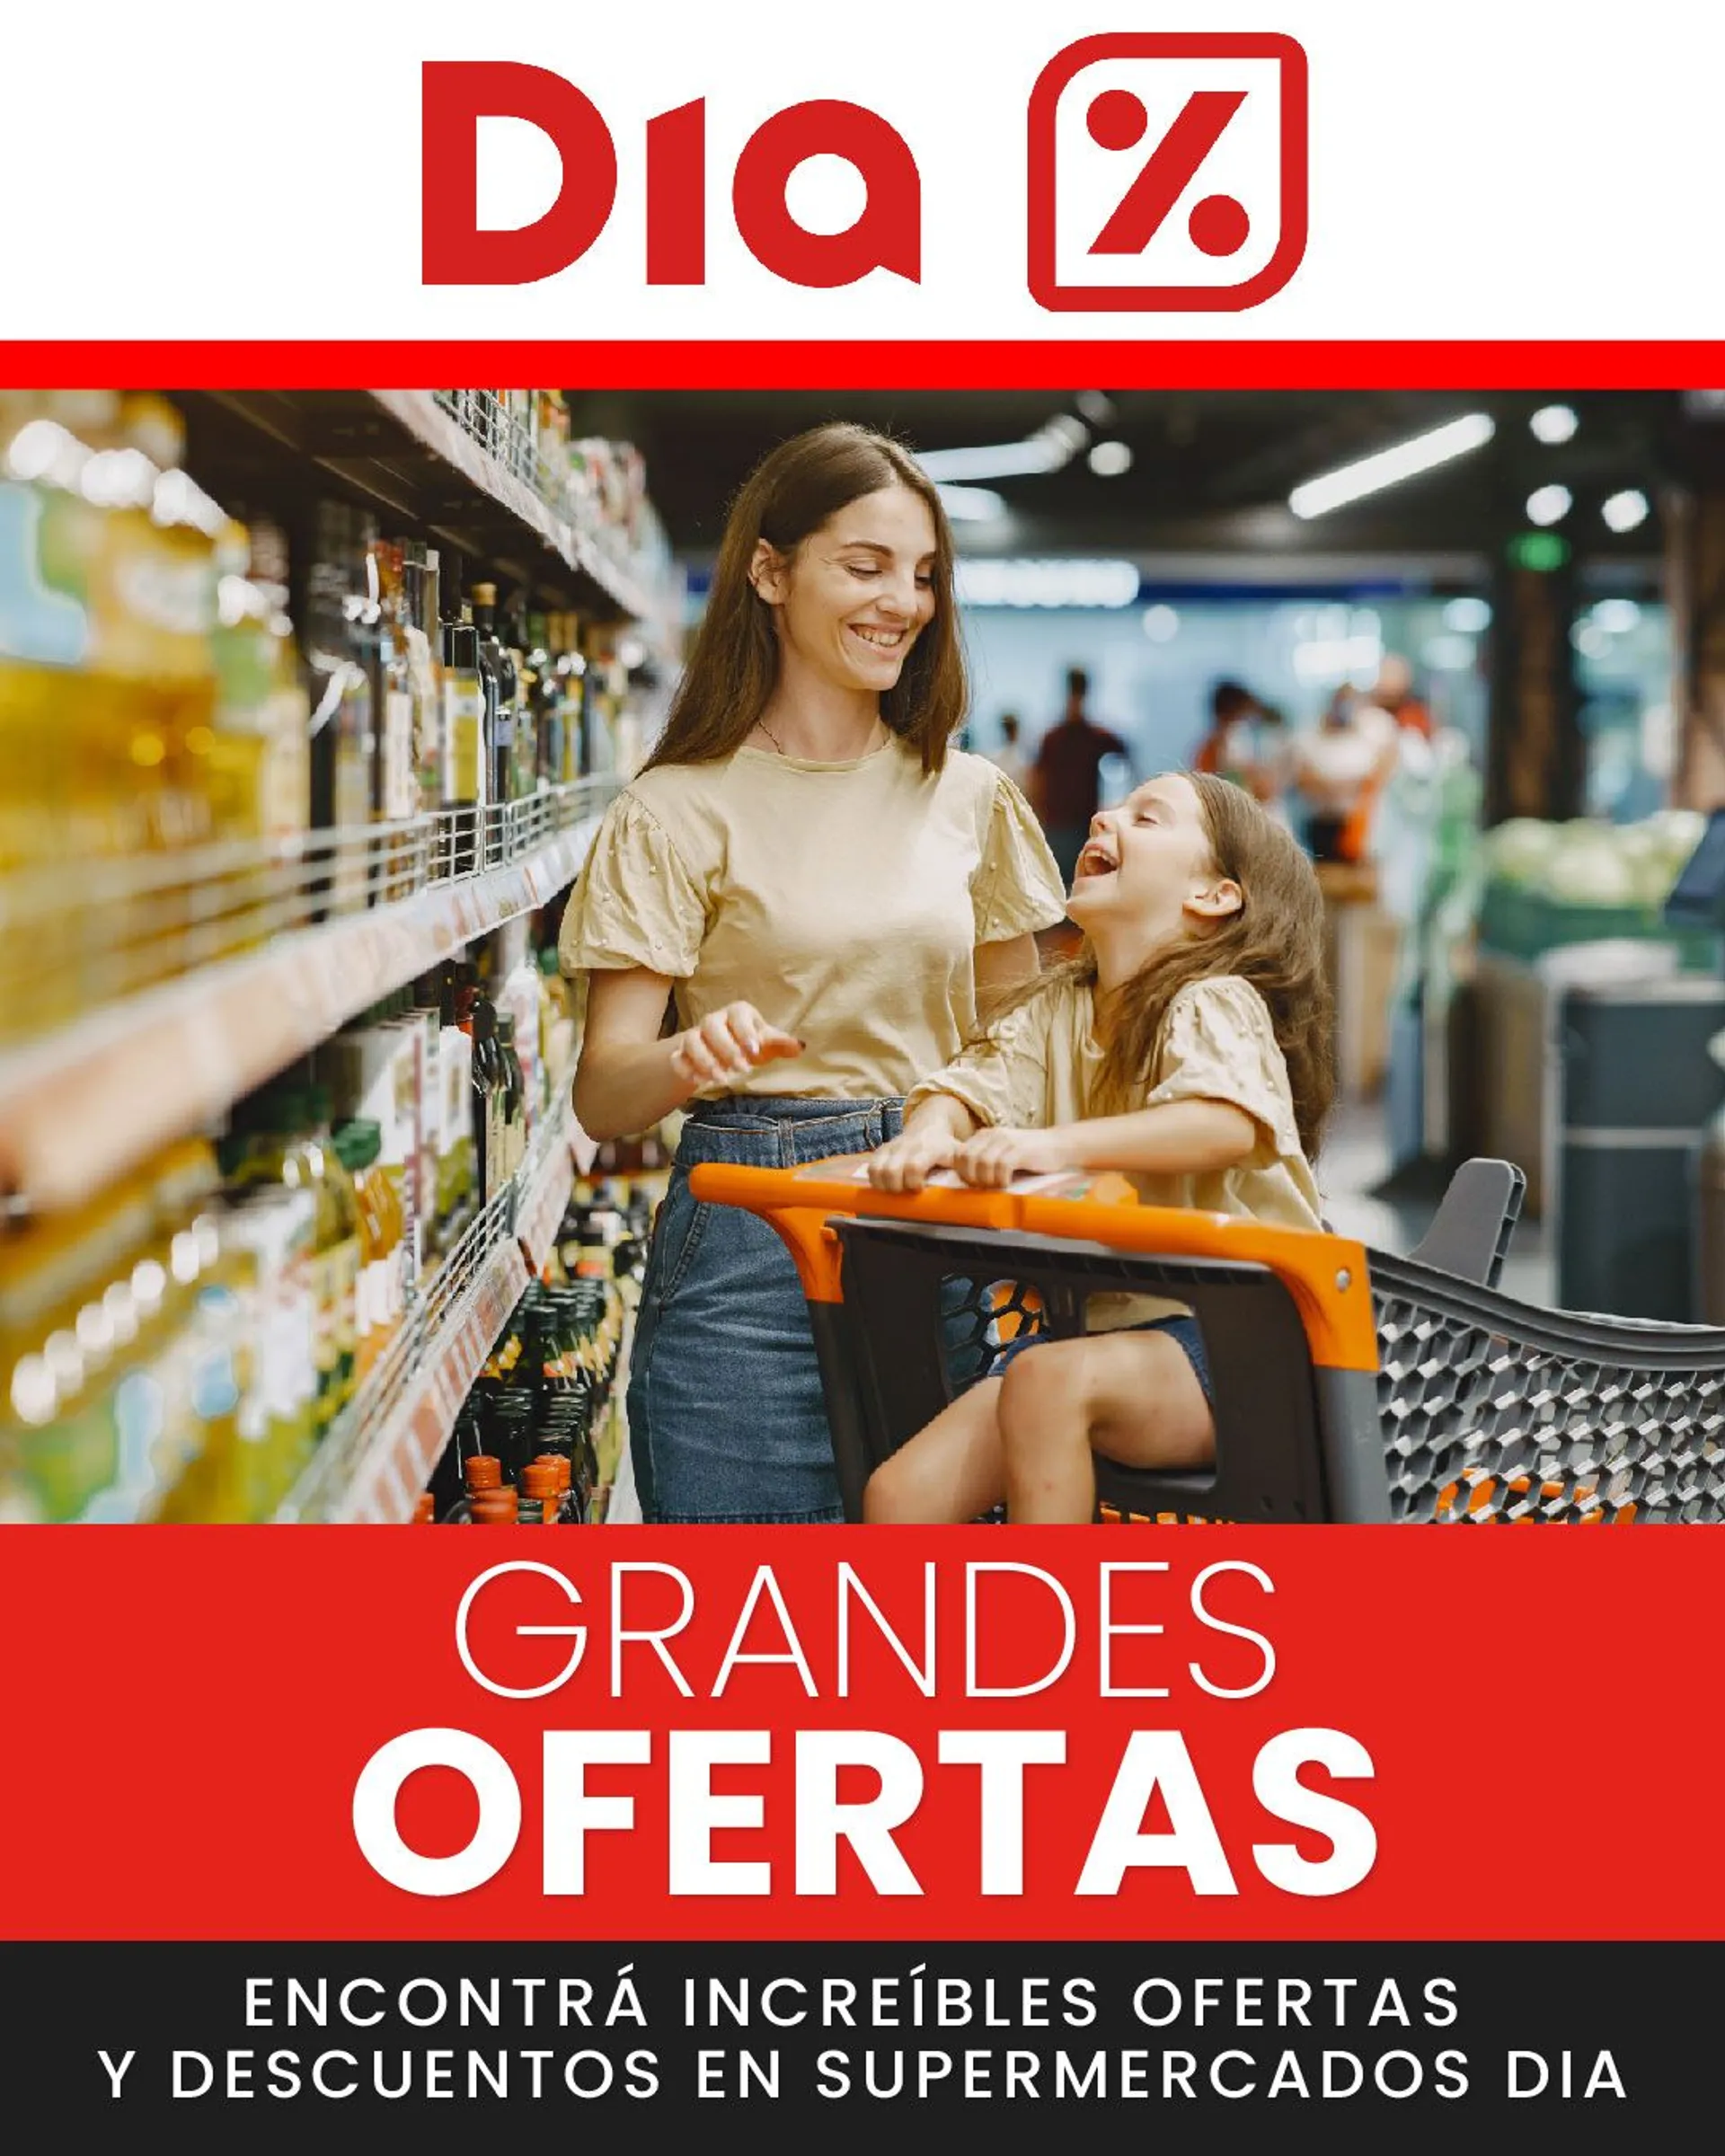 Folleto Dia en Villafranca de los Caballeros - Nueva calidad Dia - Ofertas  Hiper-Supermercados